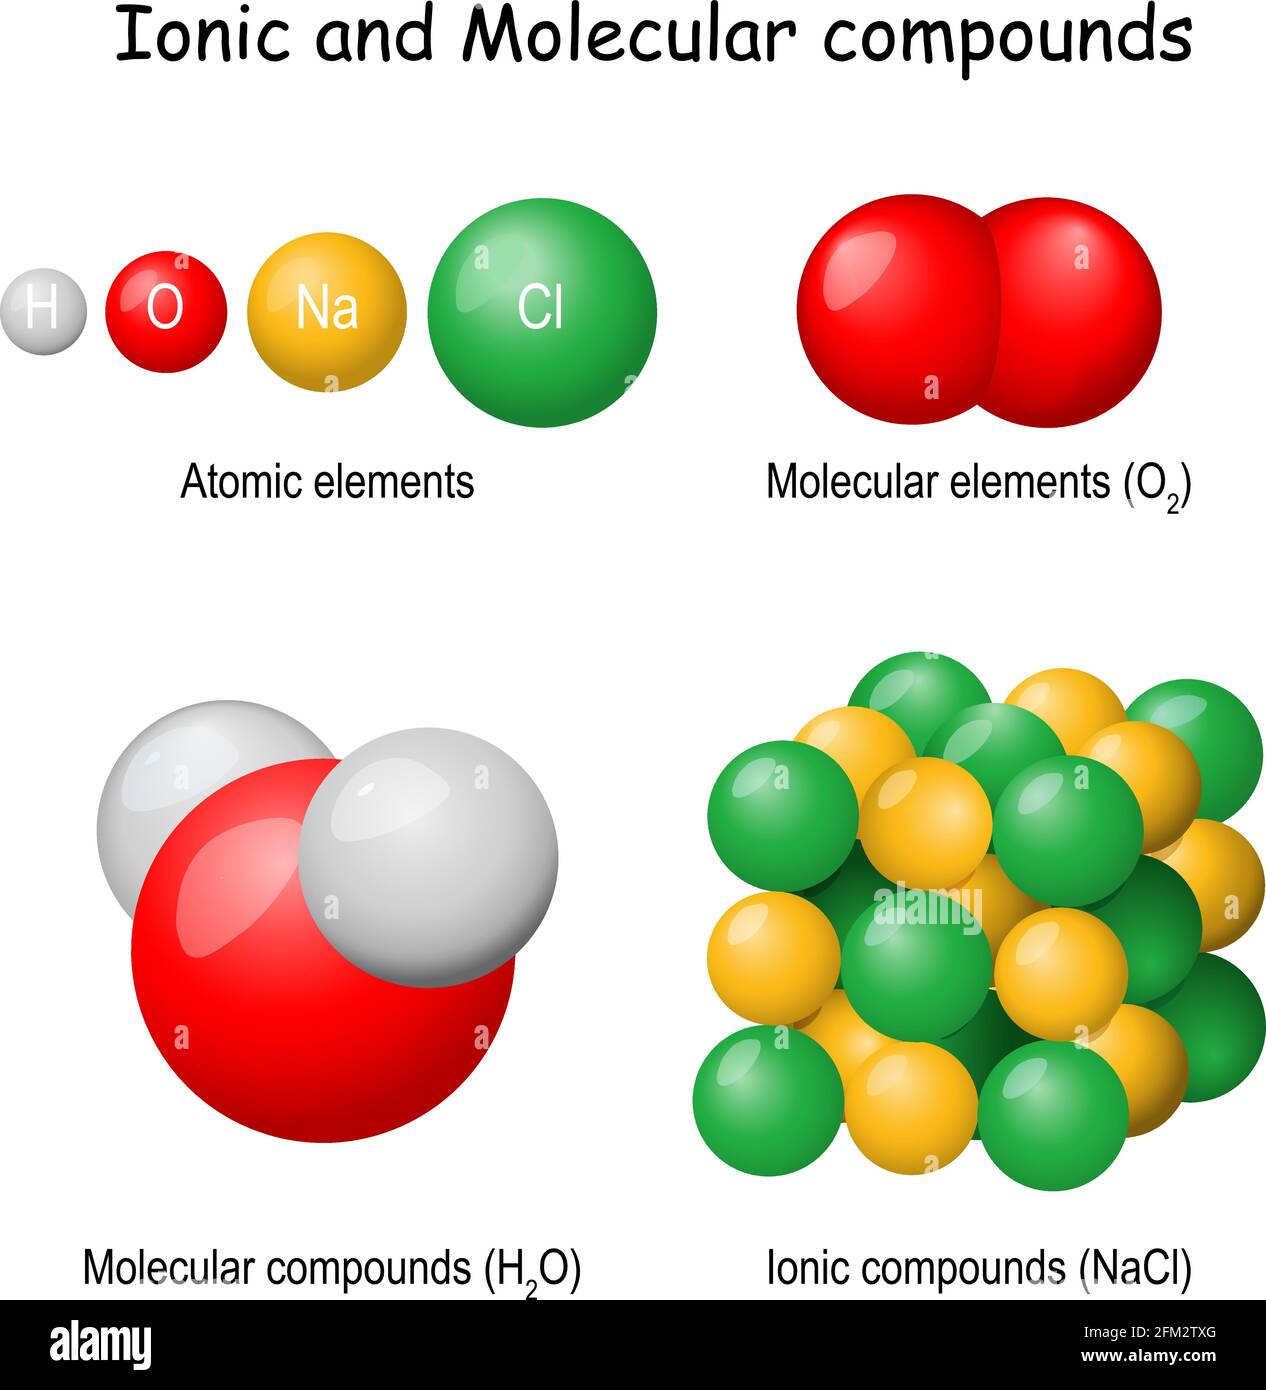 Composés ioniques et moléculaires. Classification des substances pures : atomique (hydrogène, oxygène, chlore, sodium), oxygène moléculaire (O2), Eau (H2O) Illustration de Vecteur